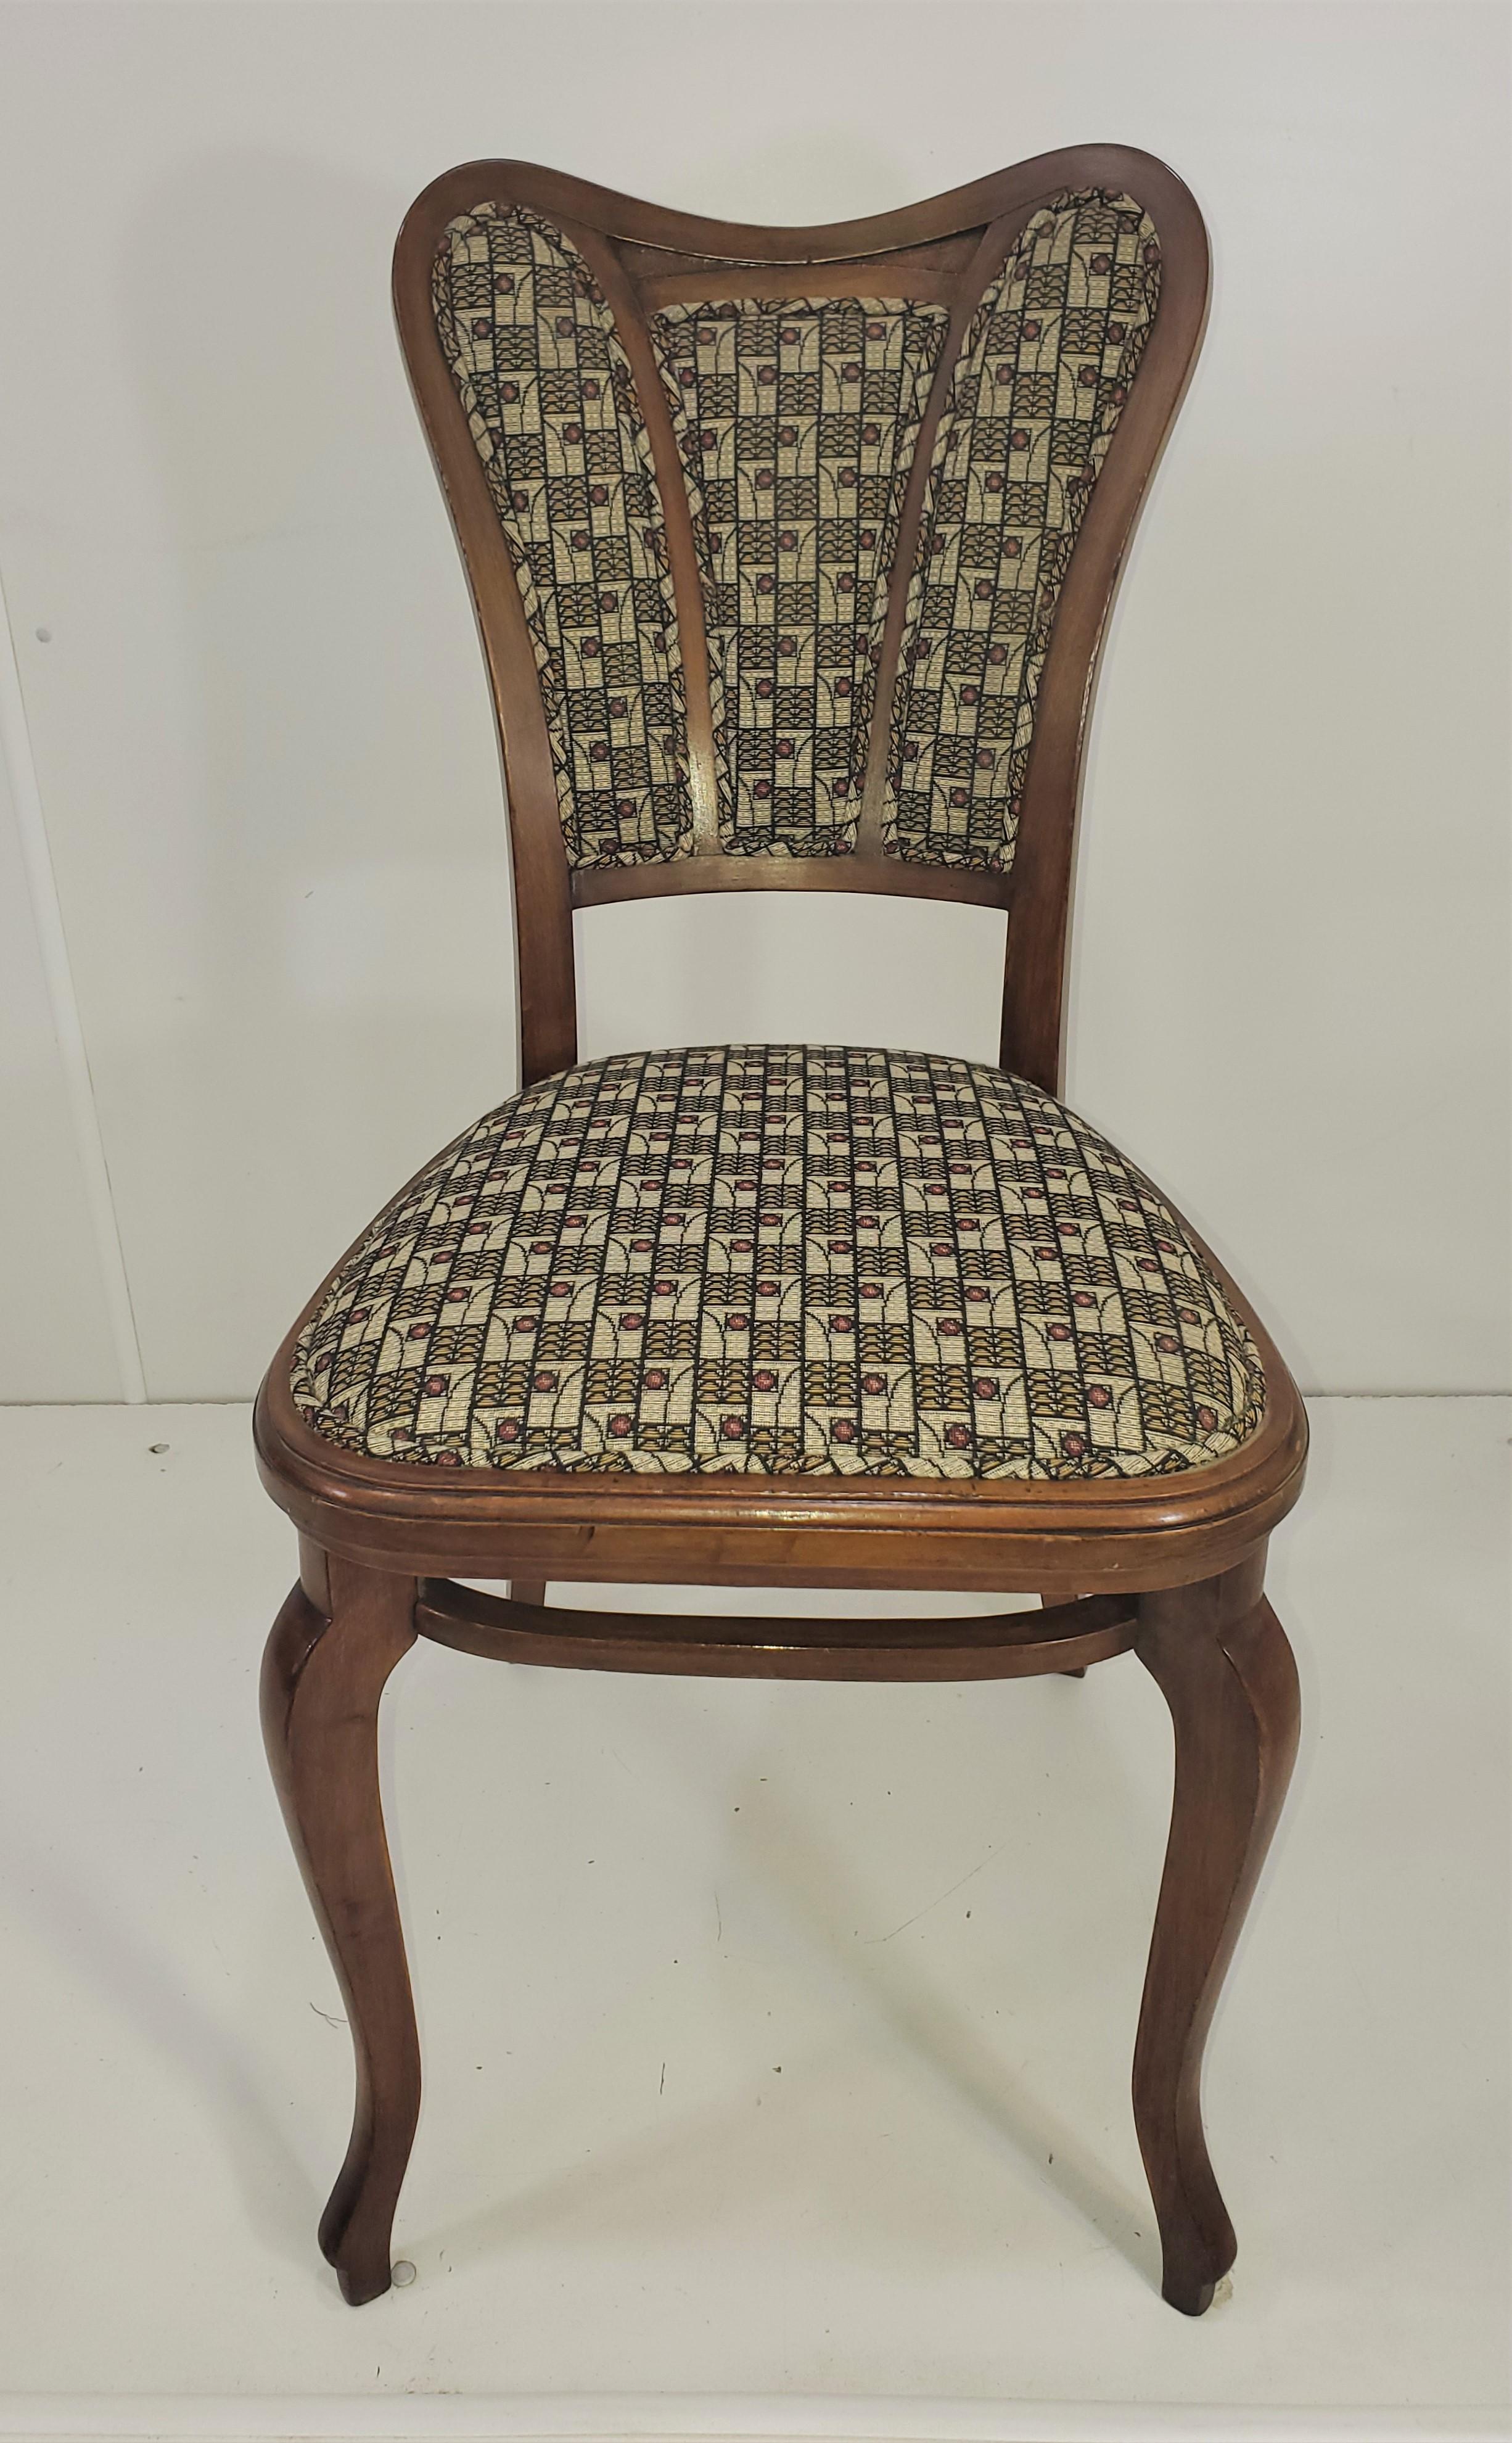 Ravissante paire de chaises d'appoint Art Nouveau/Sécession, dont le dossier est garni de papillons. Le mouvement Art nouveau s'est développé à Vienne, en Autriche, au début du XXe siècle. Il s'agissait d'une rupture avec les styles traditionnels,